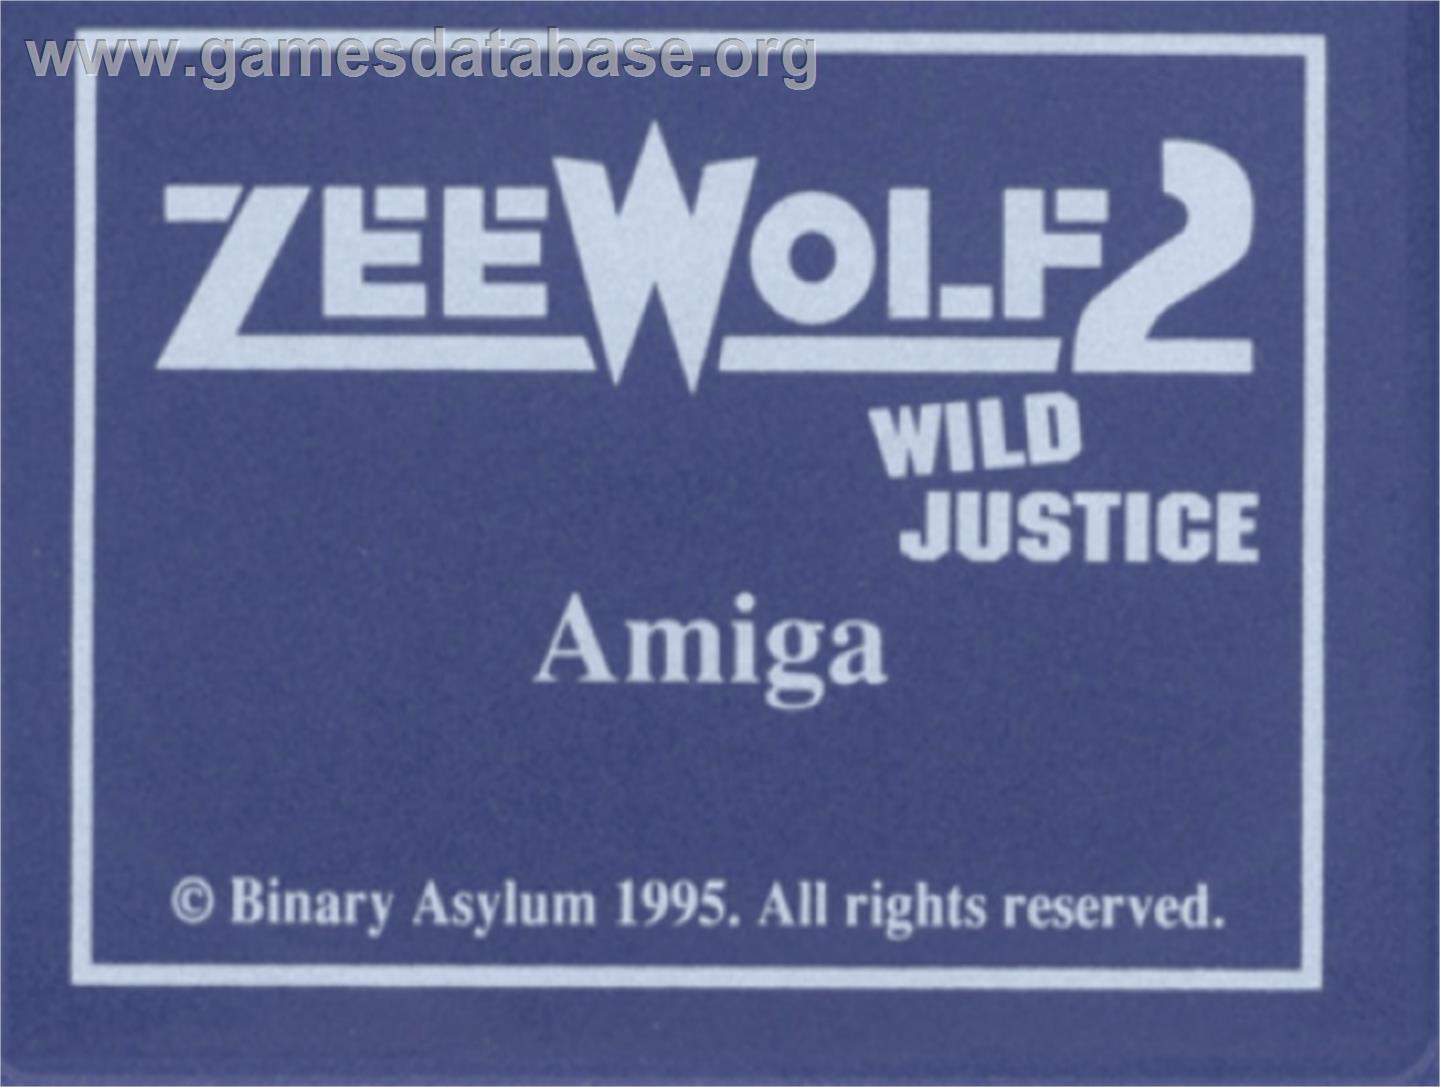 Zeewolf 2: Wild Justice - Commodore Amiga - Artwork - Cartridge Top